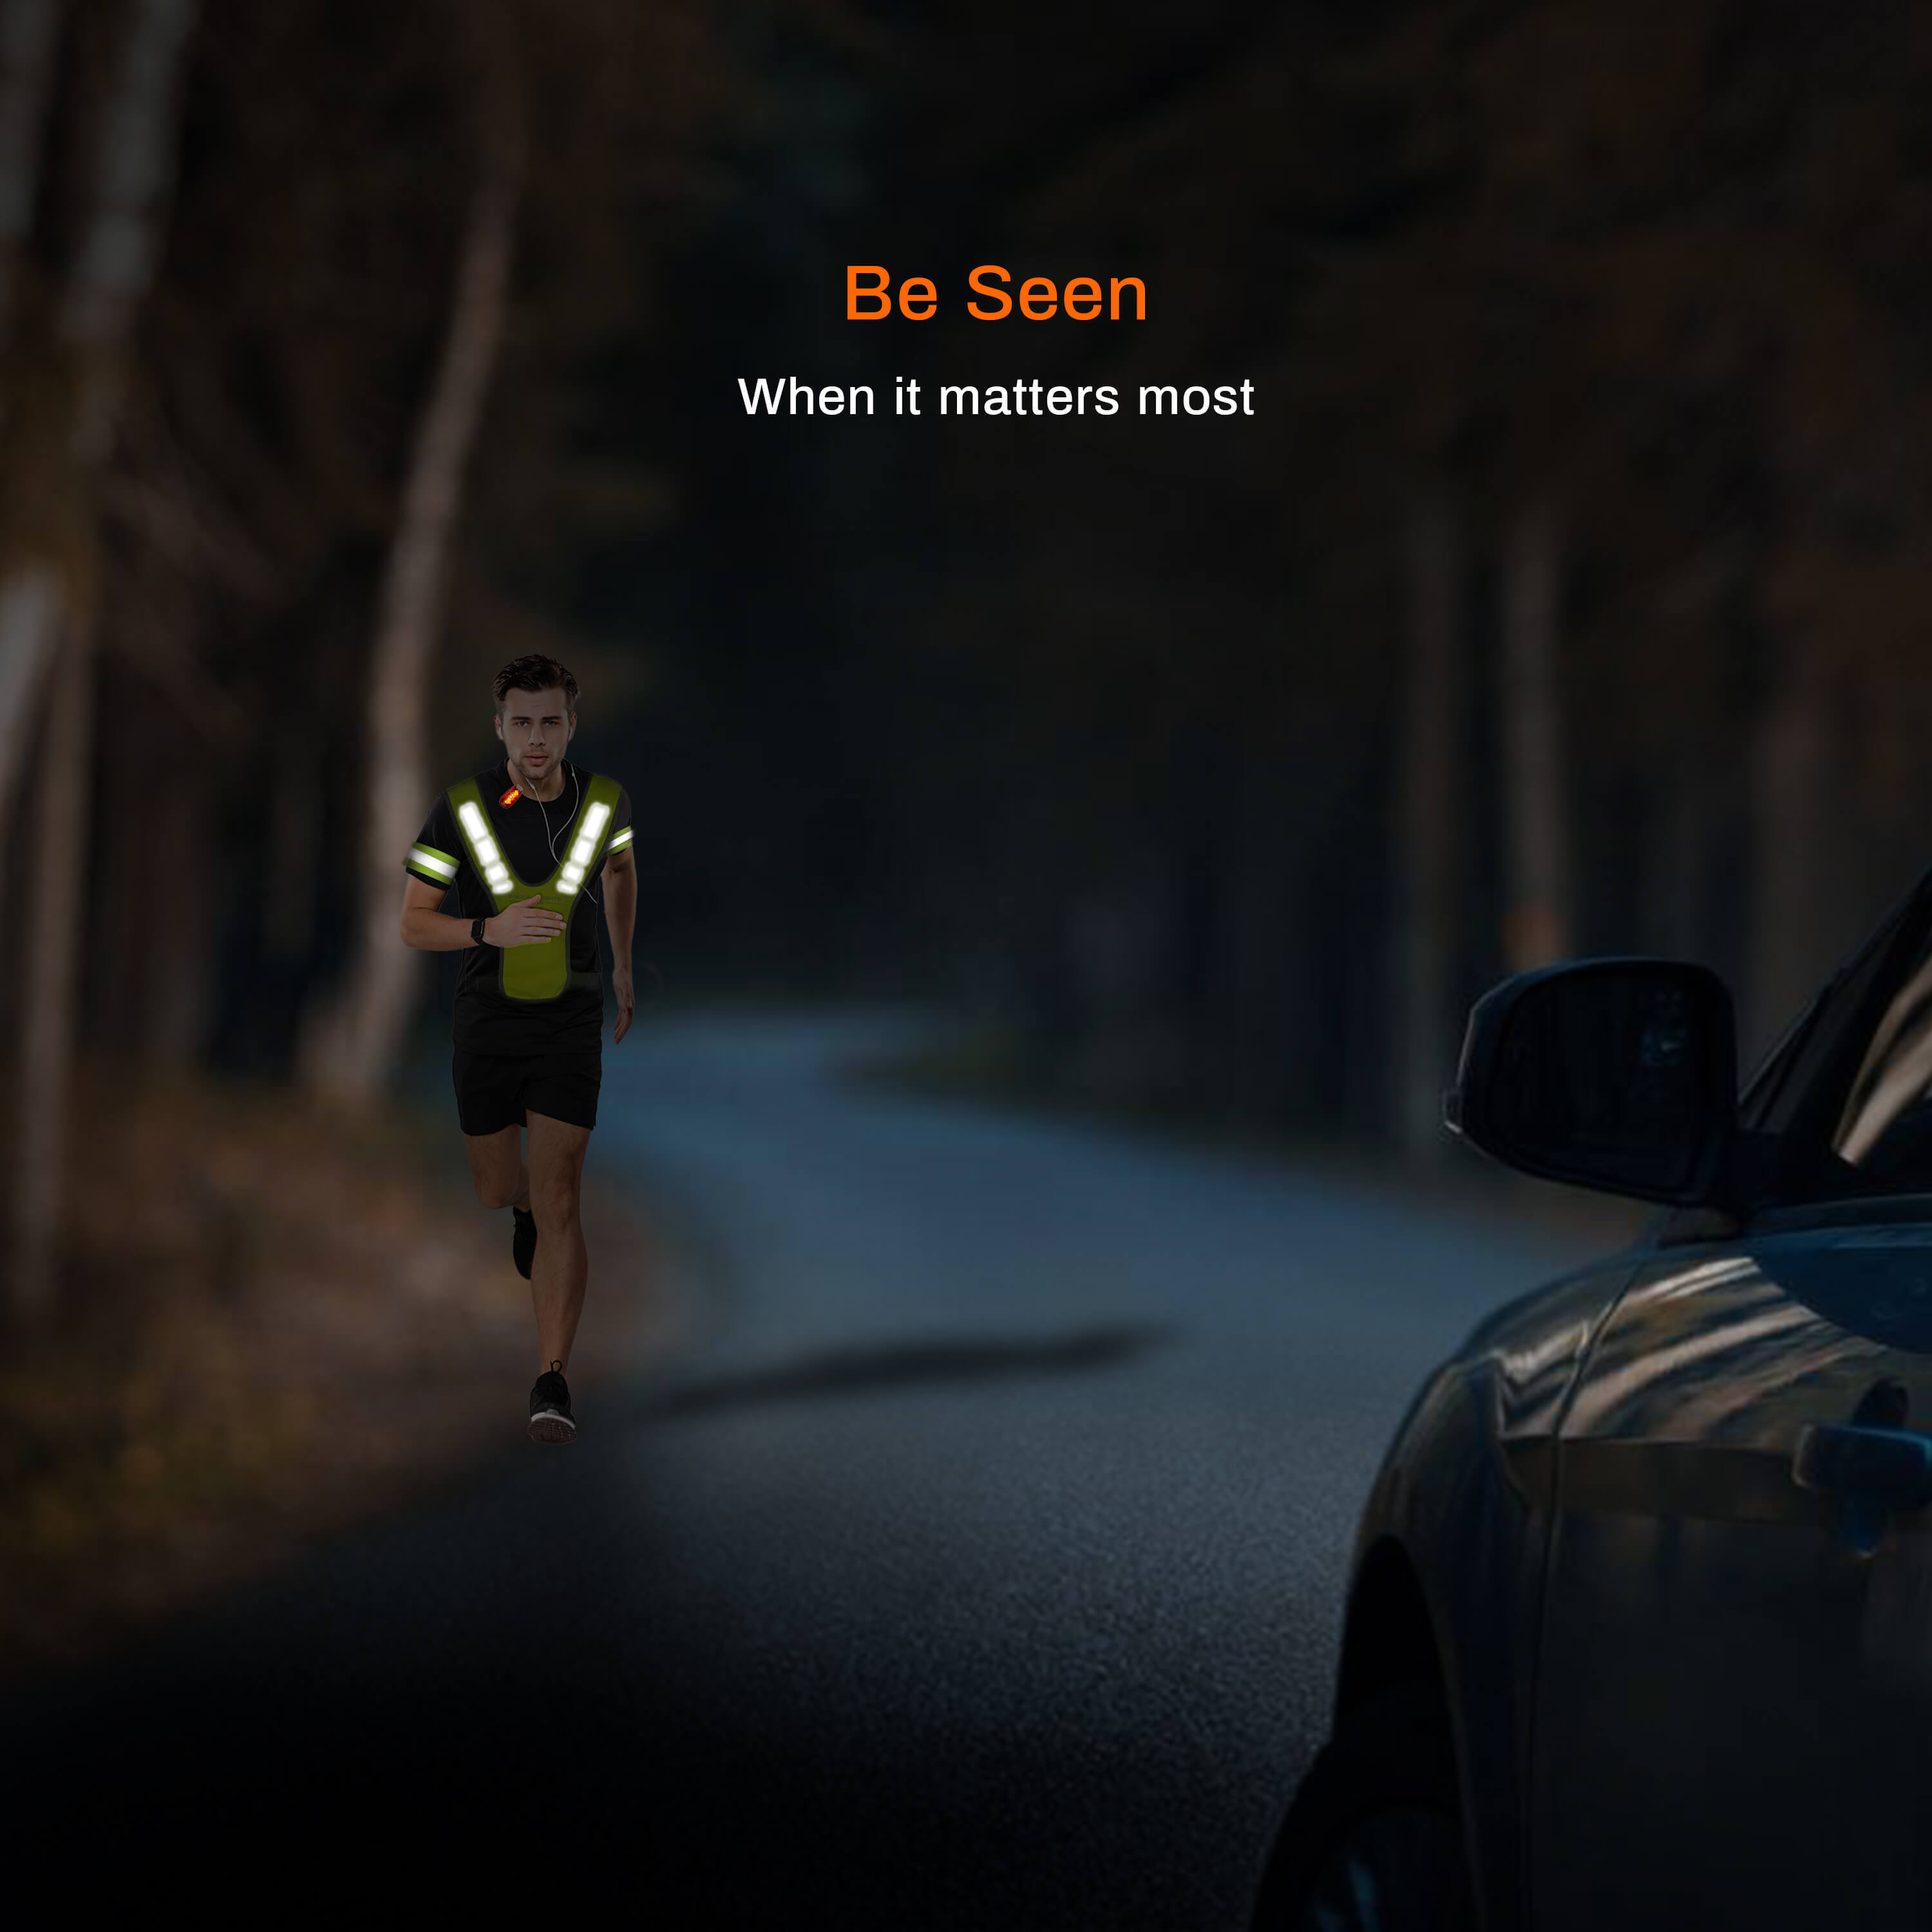 Nighttime Running Safety Gear Technology